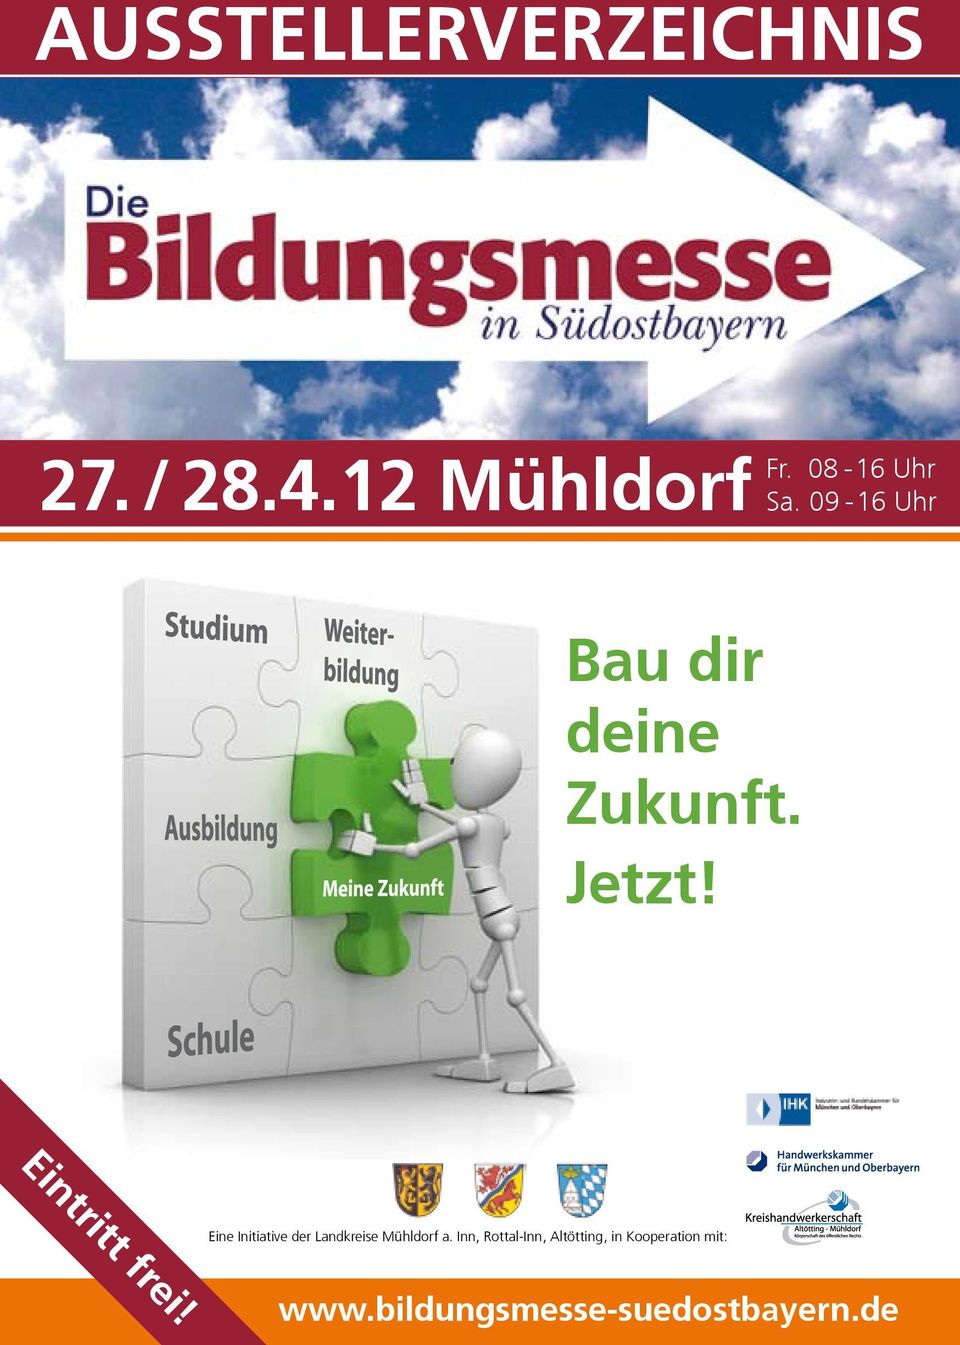 Eintritt frei! Eine Initiative der Landkreise Mühldorf a.